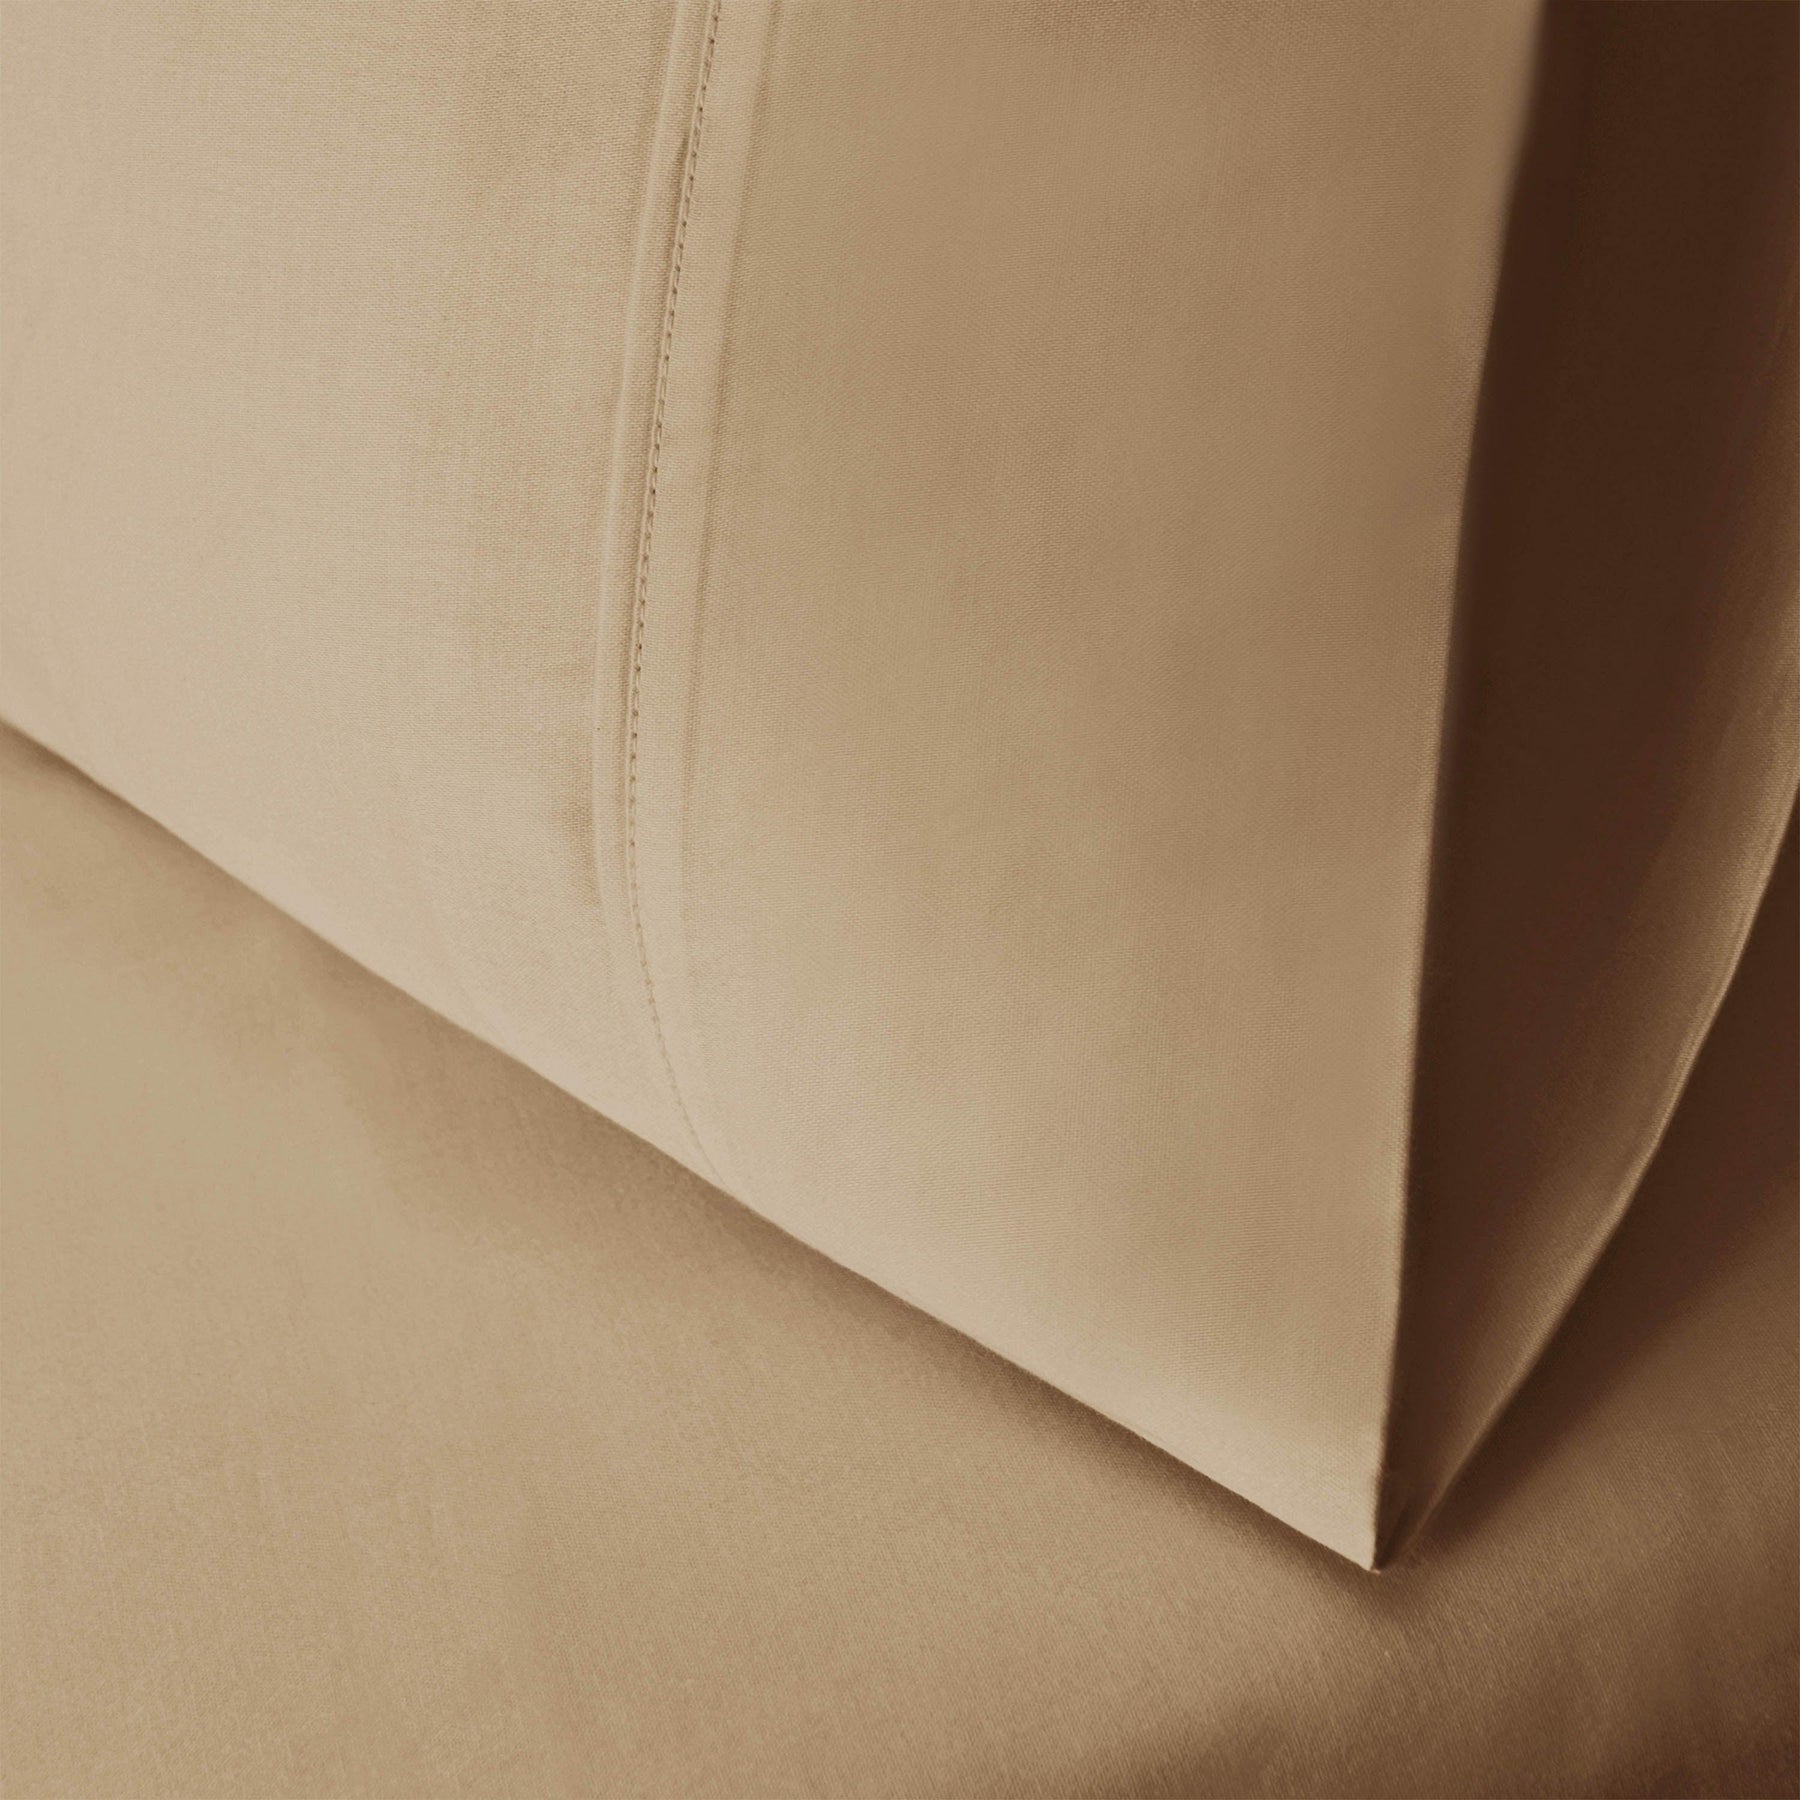  Wrinkle Resistant Egyptian Cotton 2-Piece Pillowcase Set -  Tan